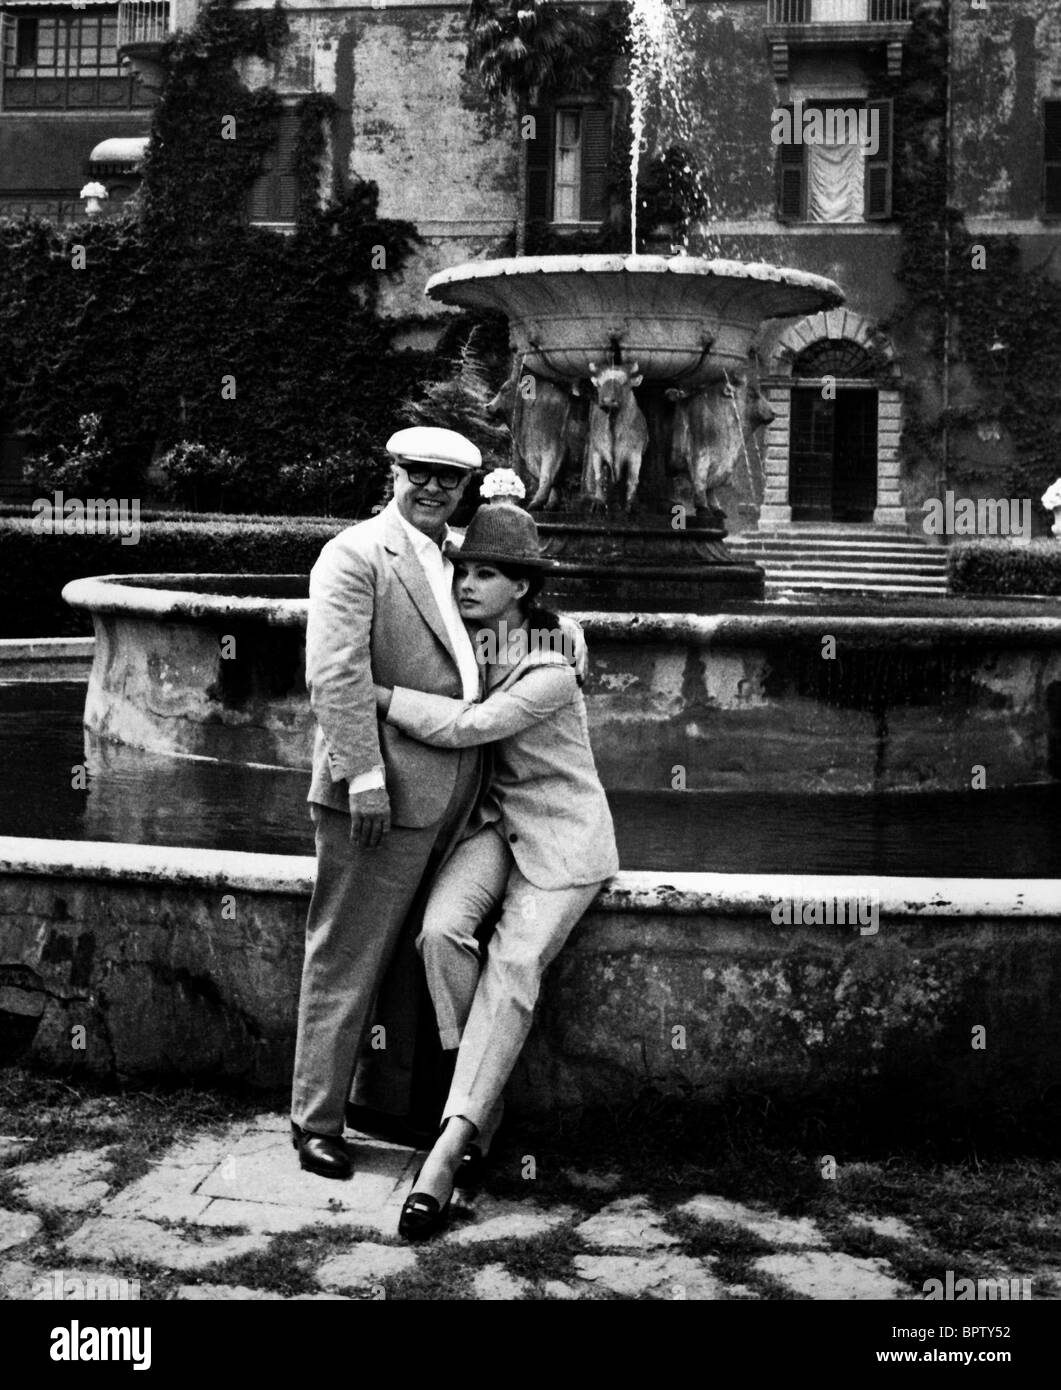 CARLO PONTI & SOPHIA LOREN HUSBAND & WIFE (1957) Stock Photo